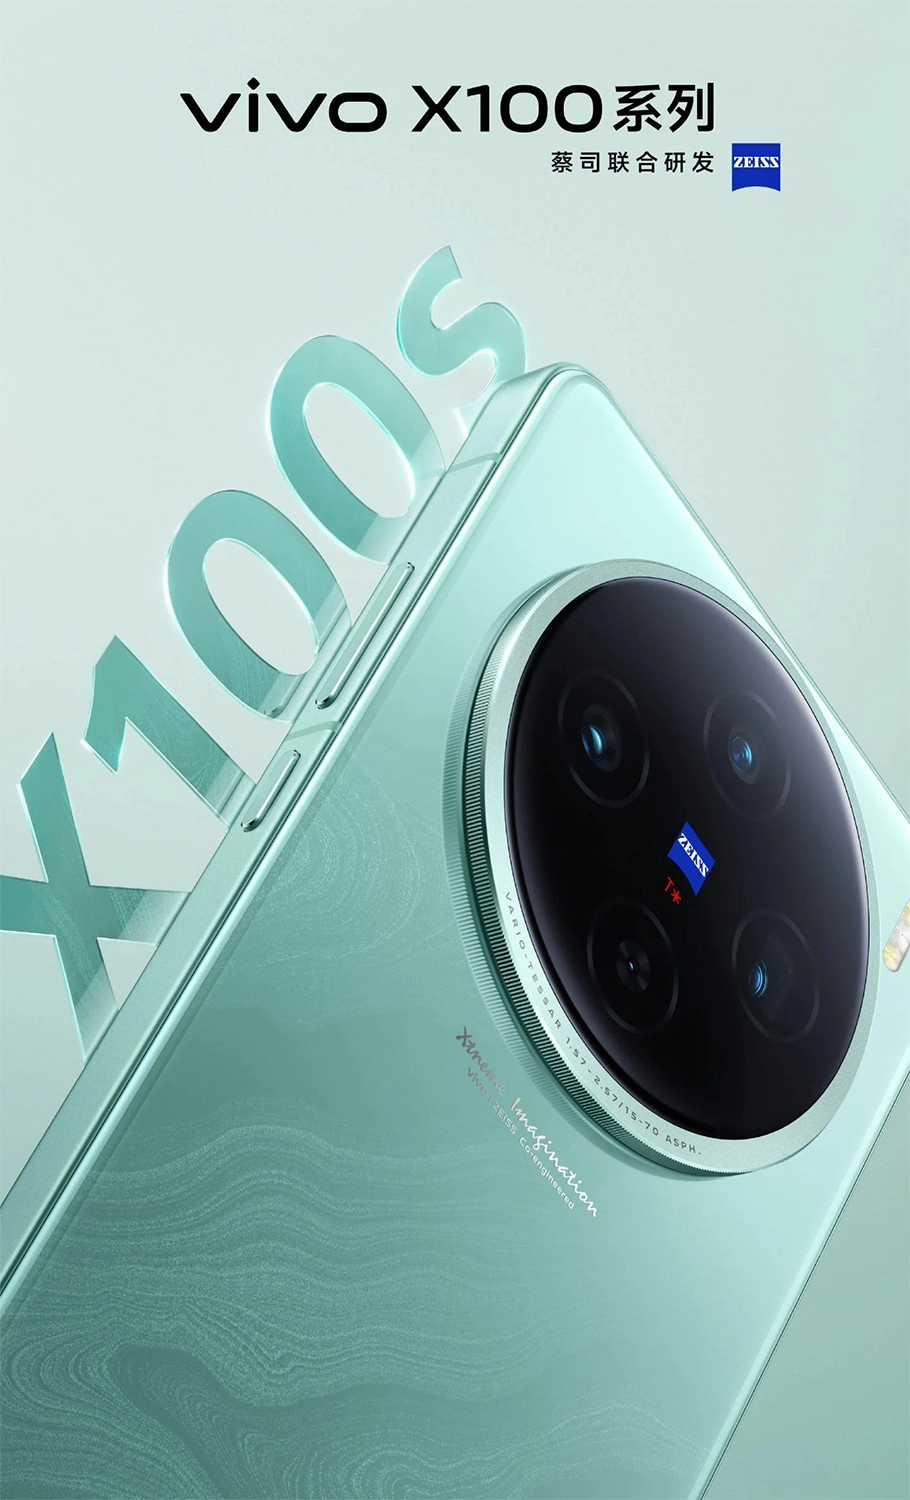 Vivo X100s, X100s Pro và X100 Ultra ra mắt, Mô-đun camera hình tròn đi kèm hệ thống đèn flash LED được bố trí theo chiều dọc